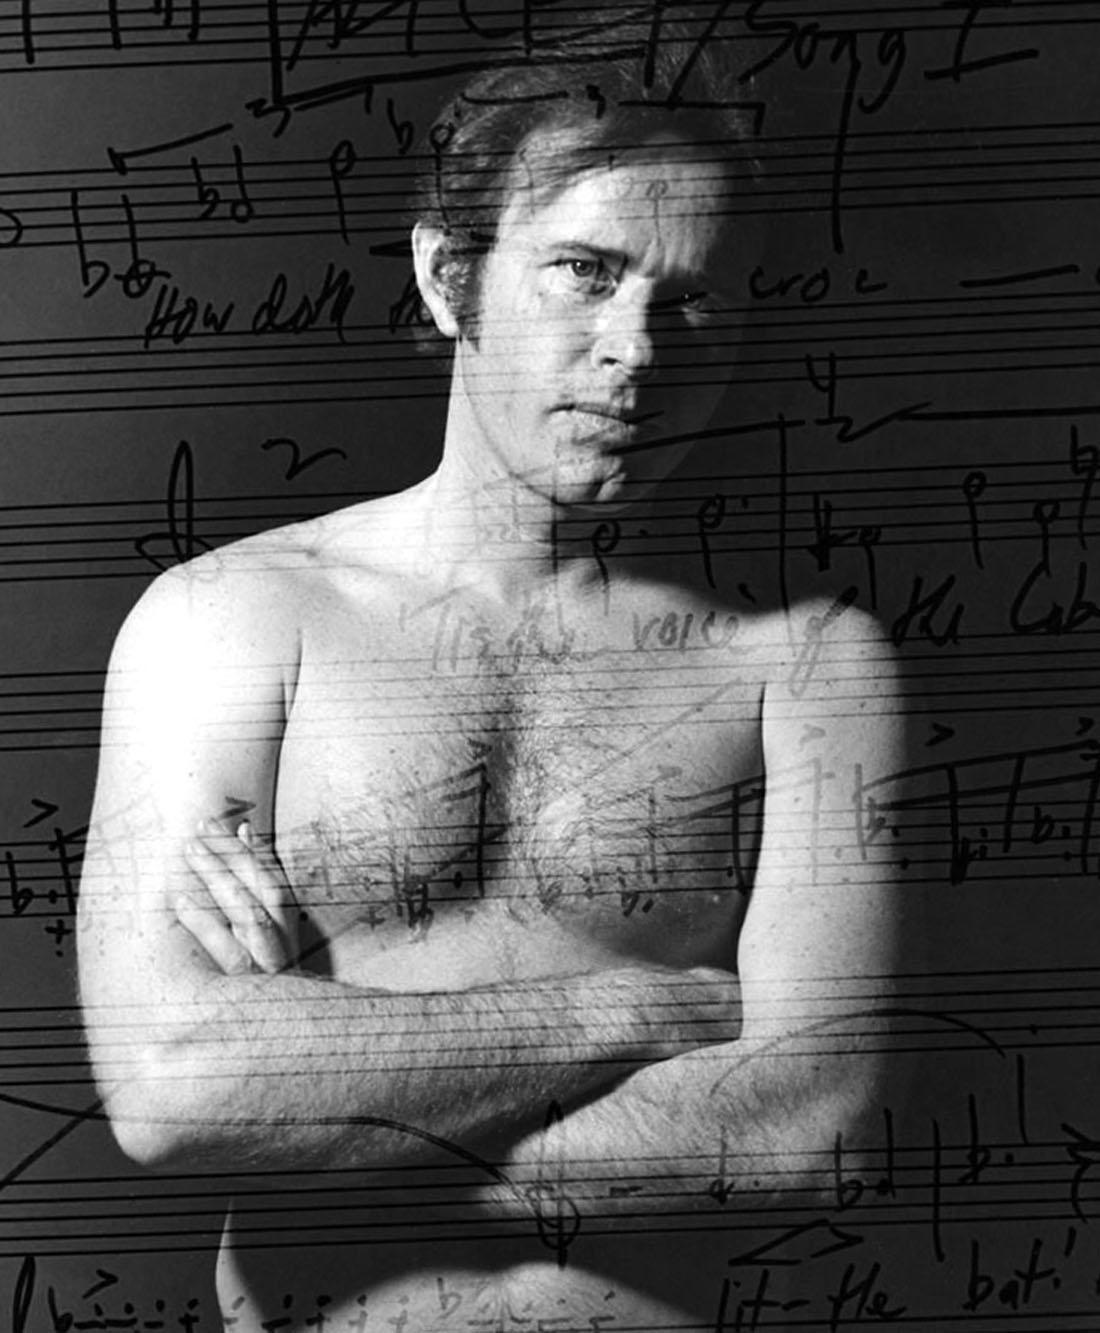 Der amerikanische Komponist David Del Tredici, in mehreren exposures nackt mit seiner Musik. – Photograph von Jack Mitchell